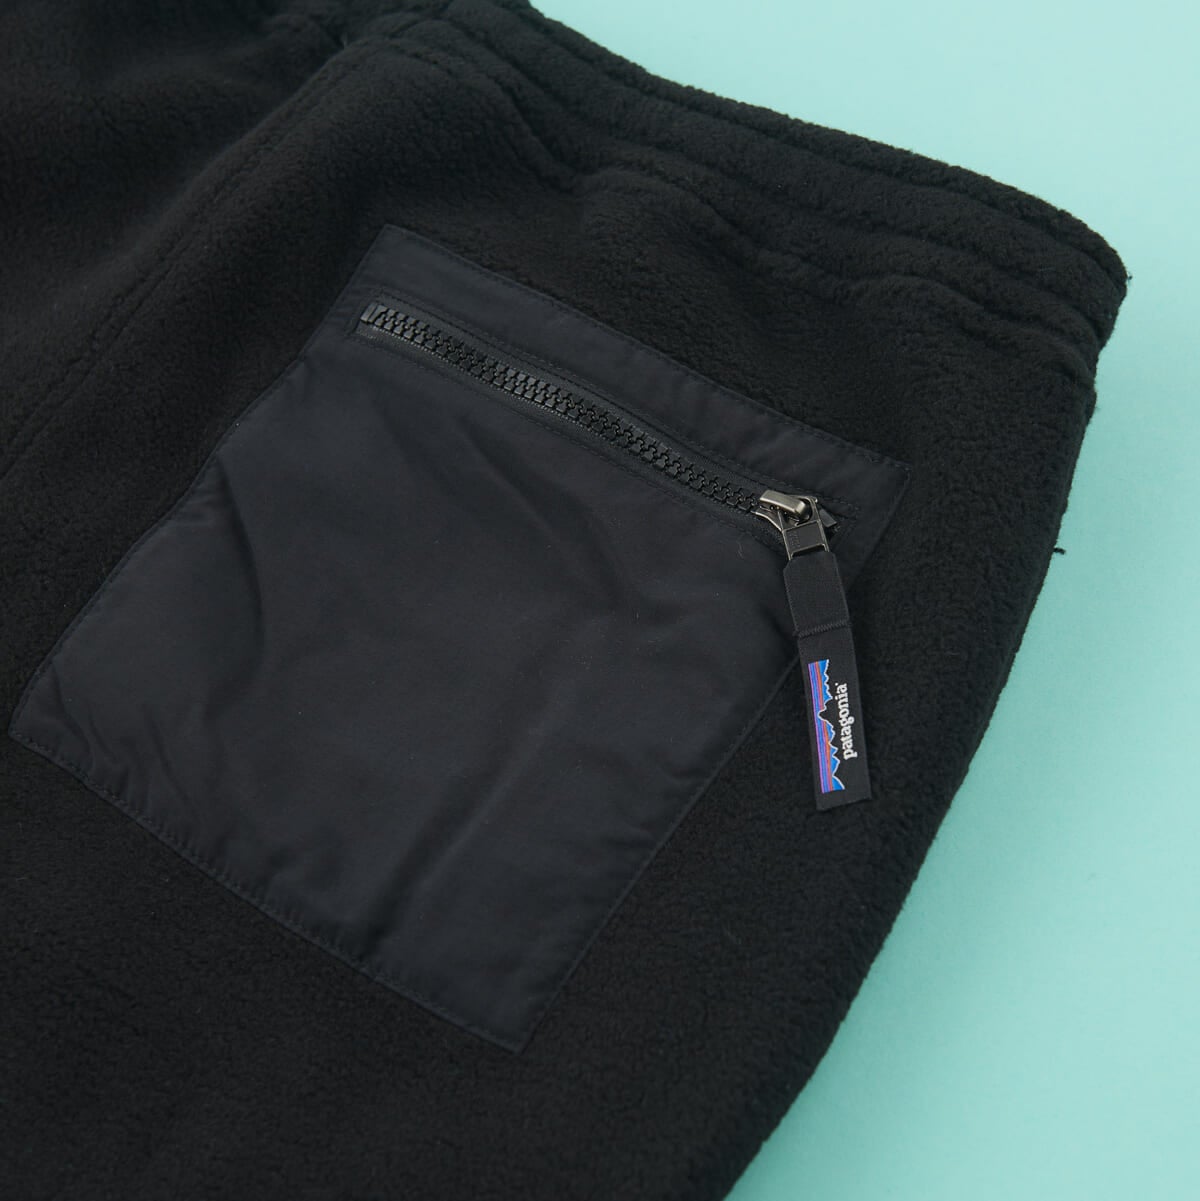 パタゴニアのパンツ「メンズ・シンチラ・パンツ」のポケット